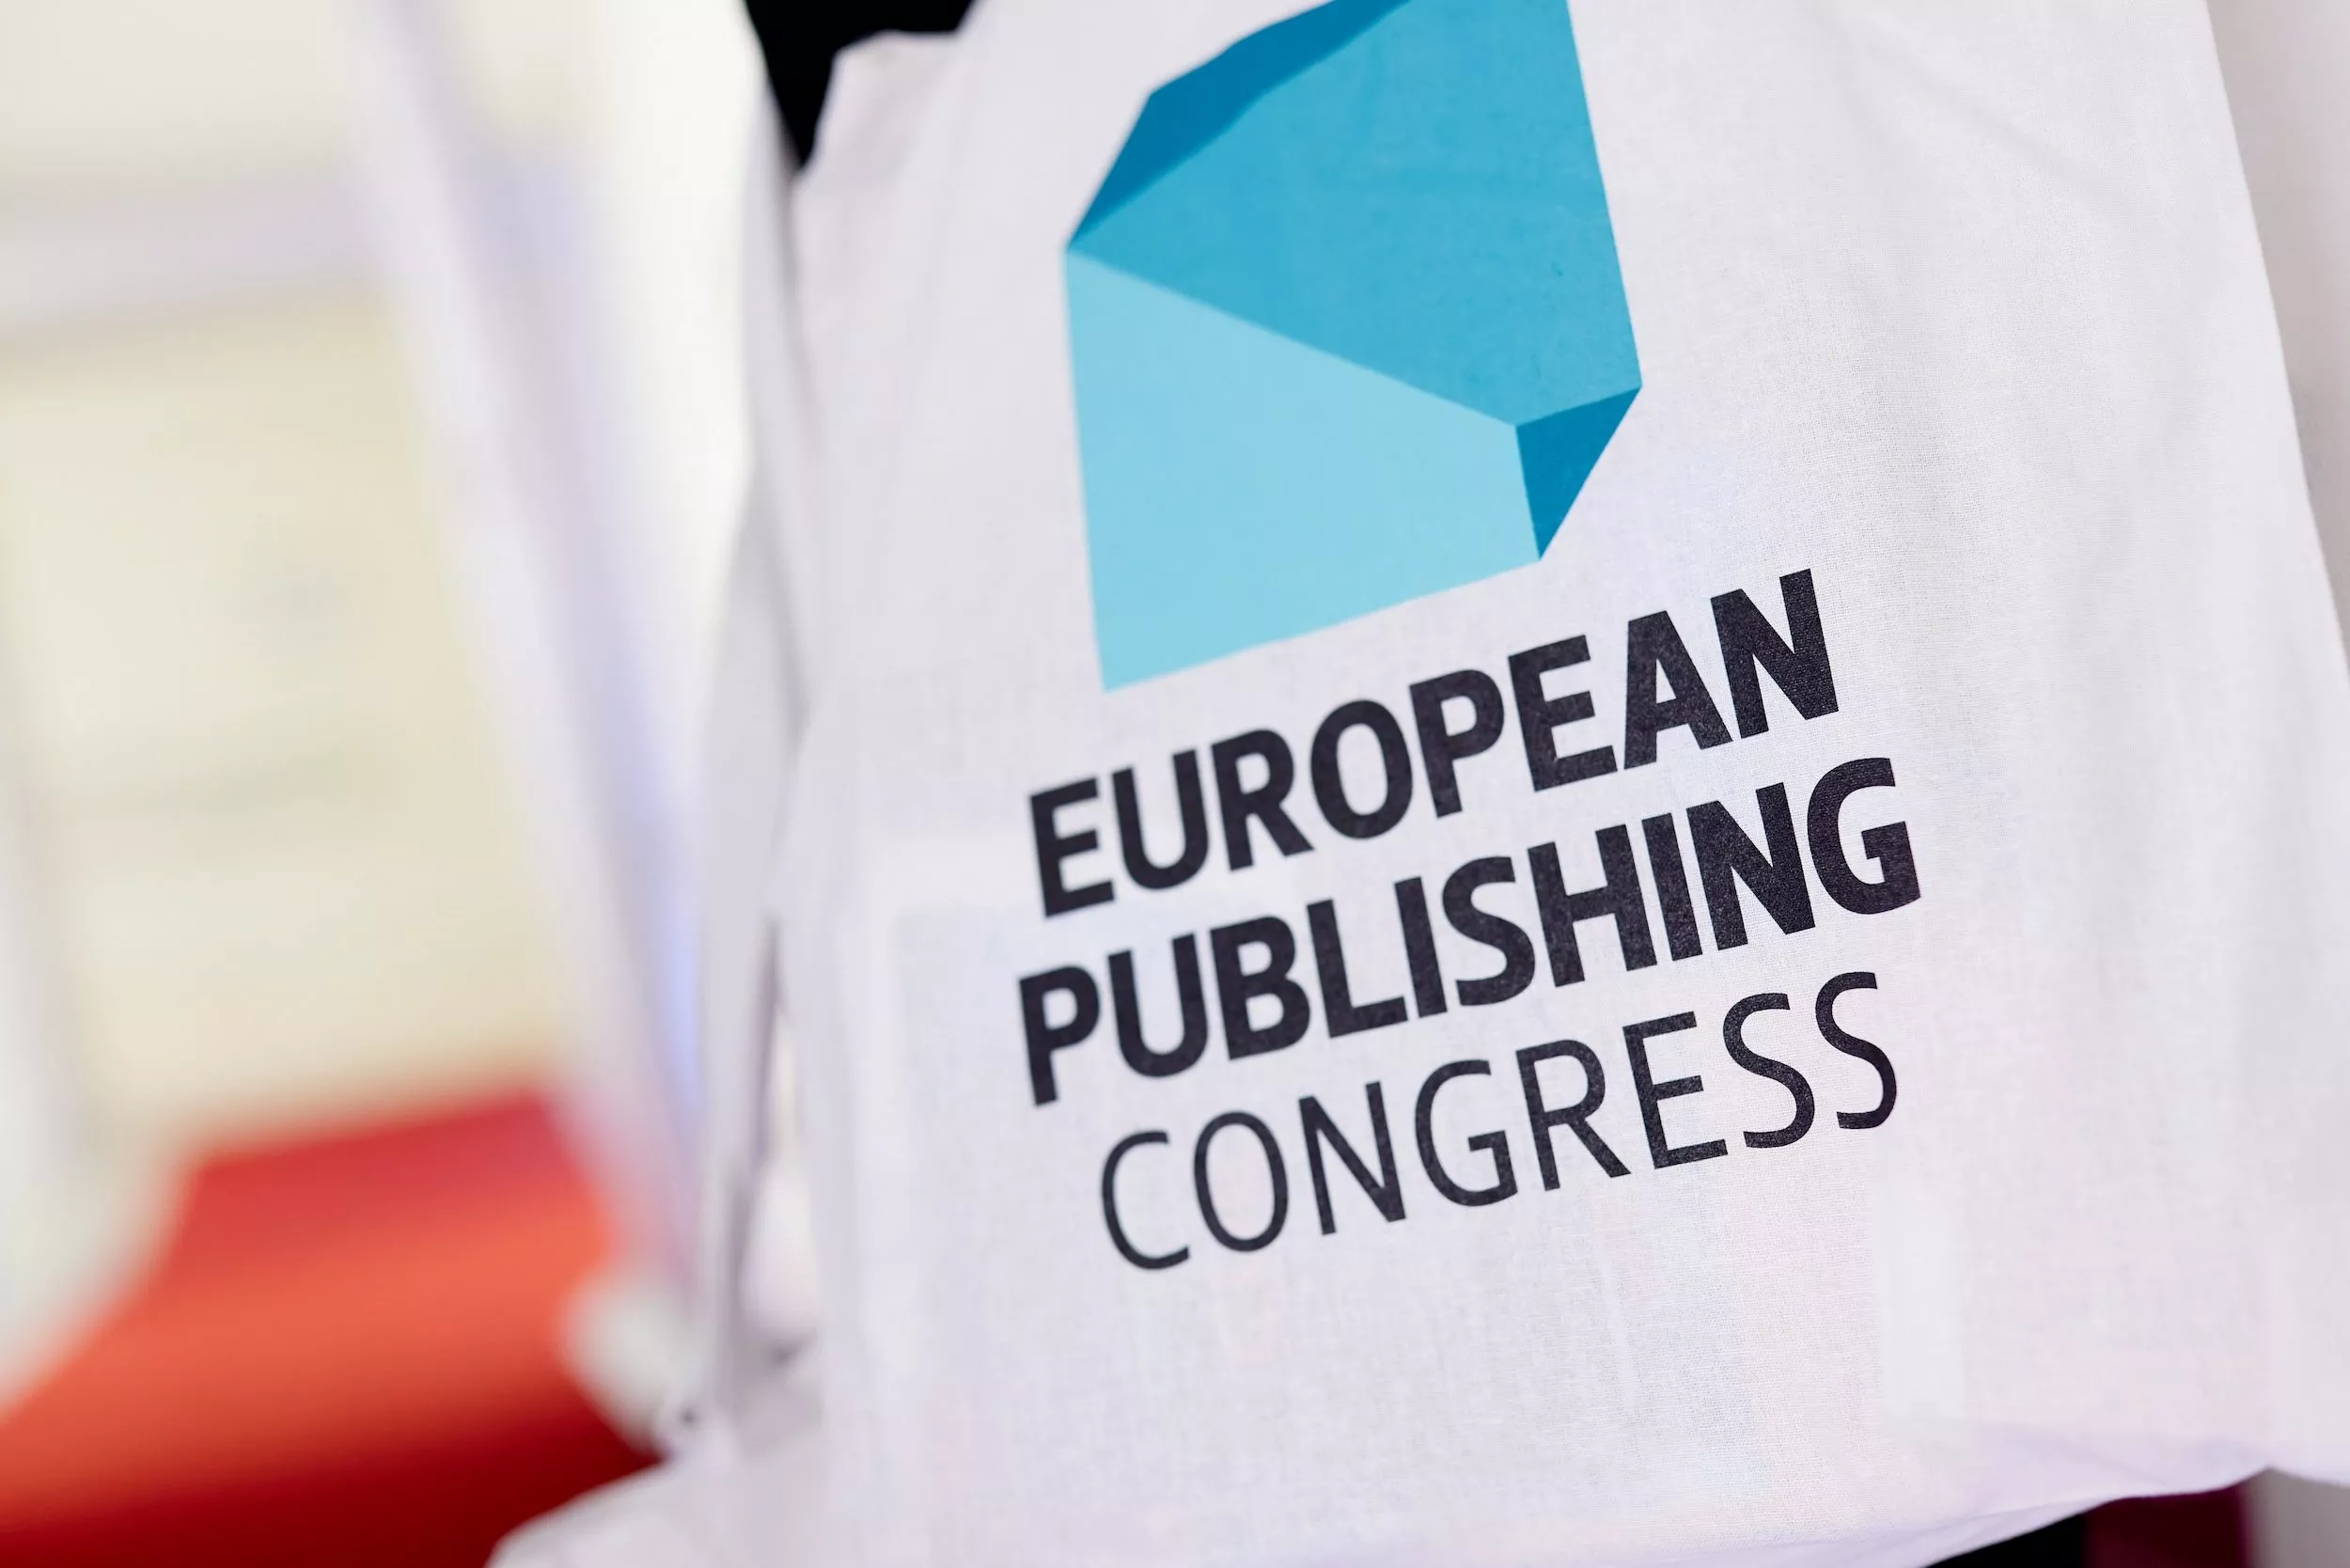 Der European Publishing Congress ist eine jährlich abgehaltene Veranstaltung des Oberauer Medienfachverlags.